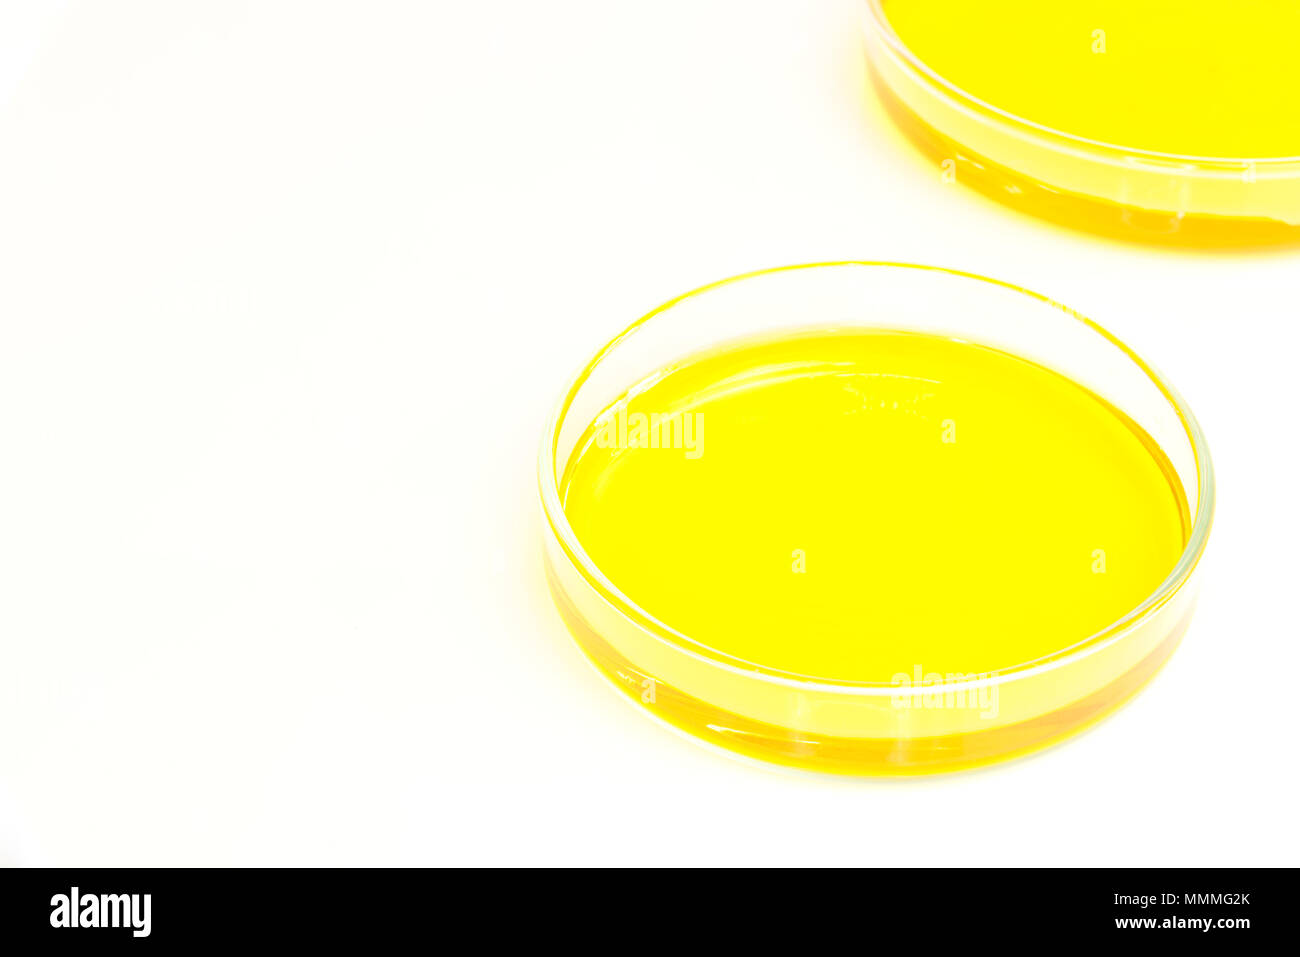 Piastre di Petri (petridishes) di soluzione di bicromato di potassio liquido giallo isolato su sfondo bianco. La scienza concetto scientifico Foto Stock